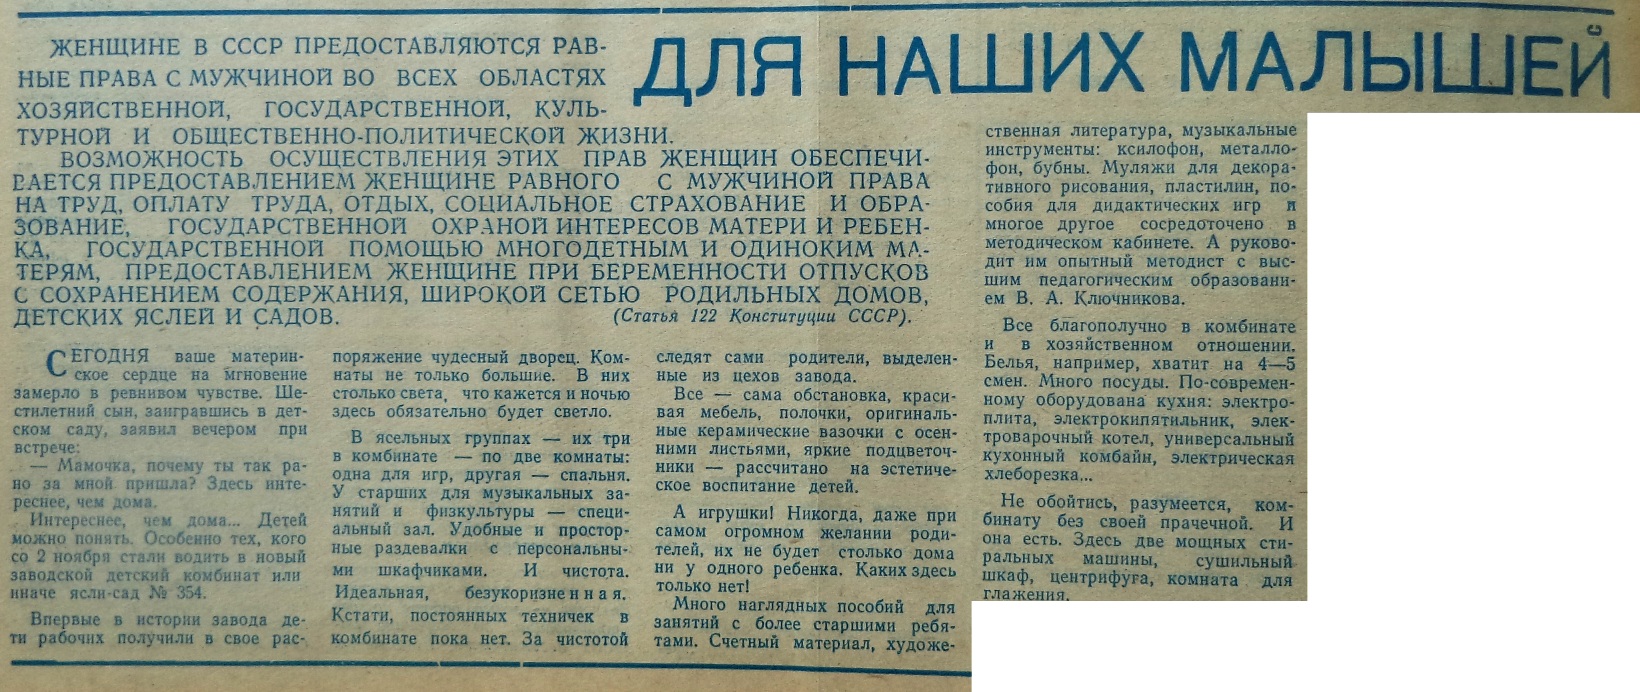 Ново-Садовая-ФОТО-66-Знамя Труда-1970-4 декабря-1